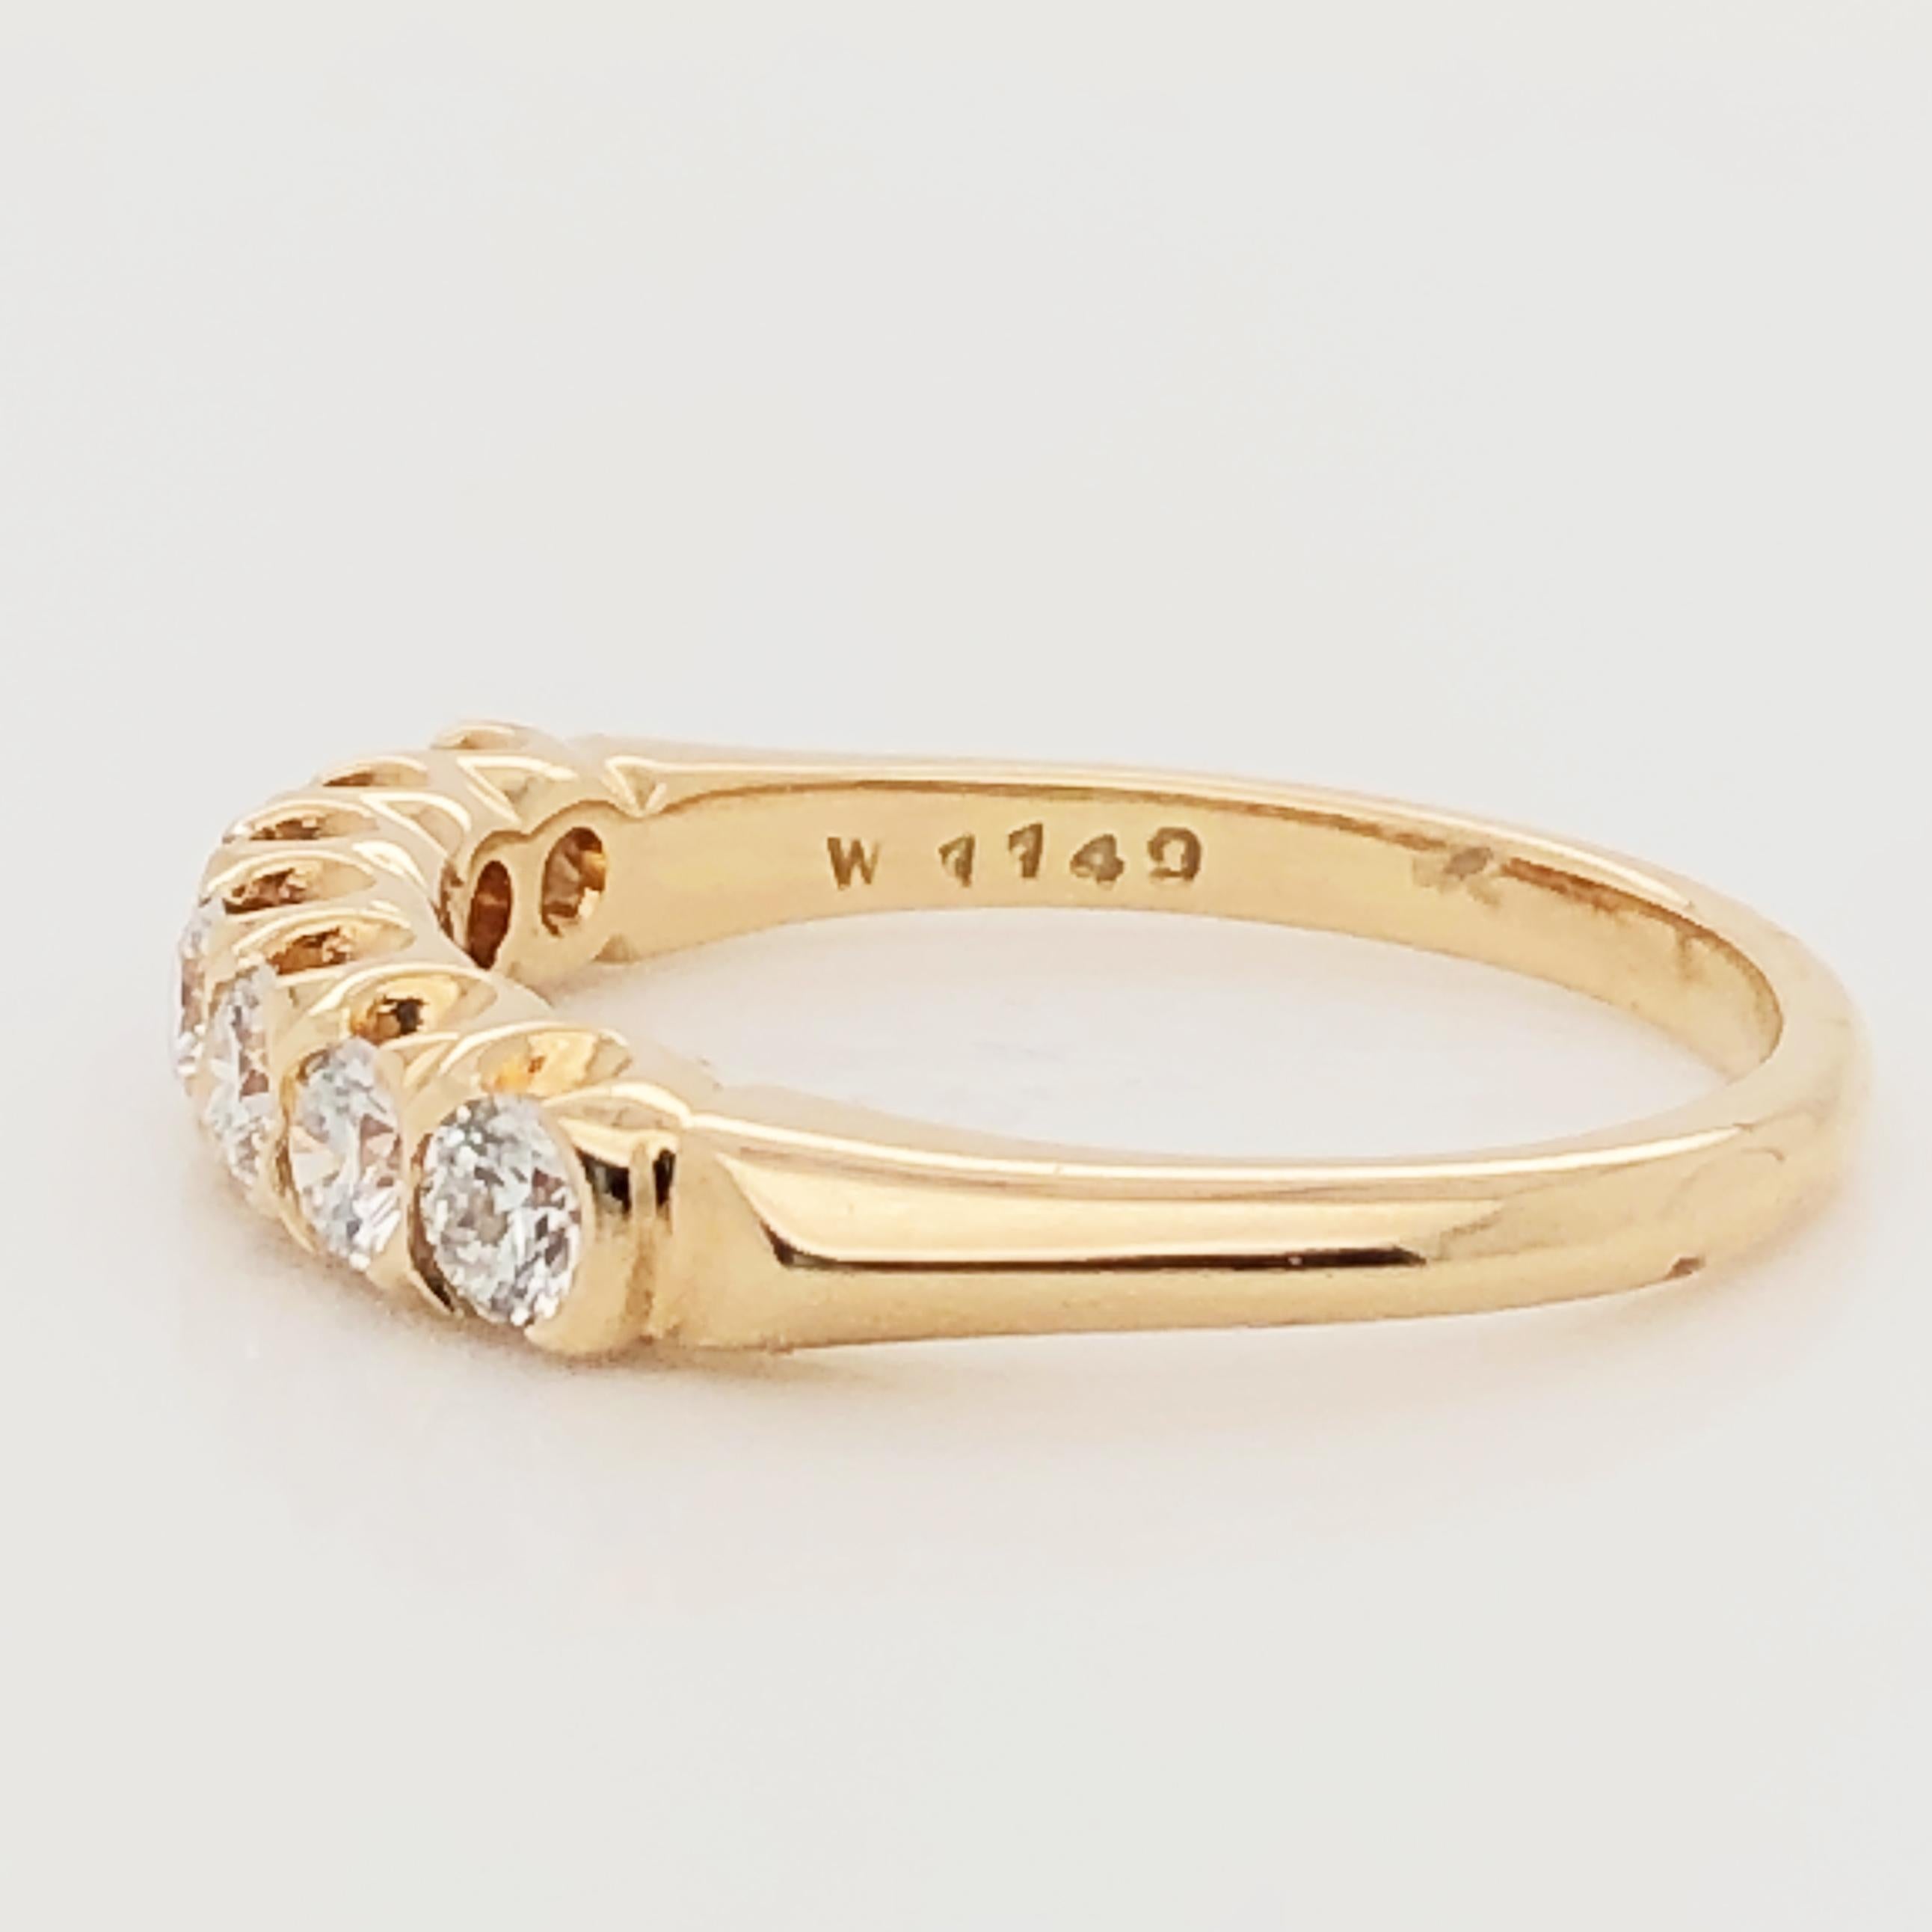 Round Cut Oscar Heyman Gold Diamond Partway Wedding Band Ring